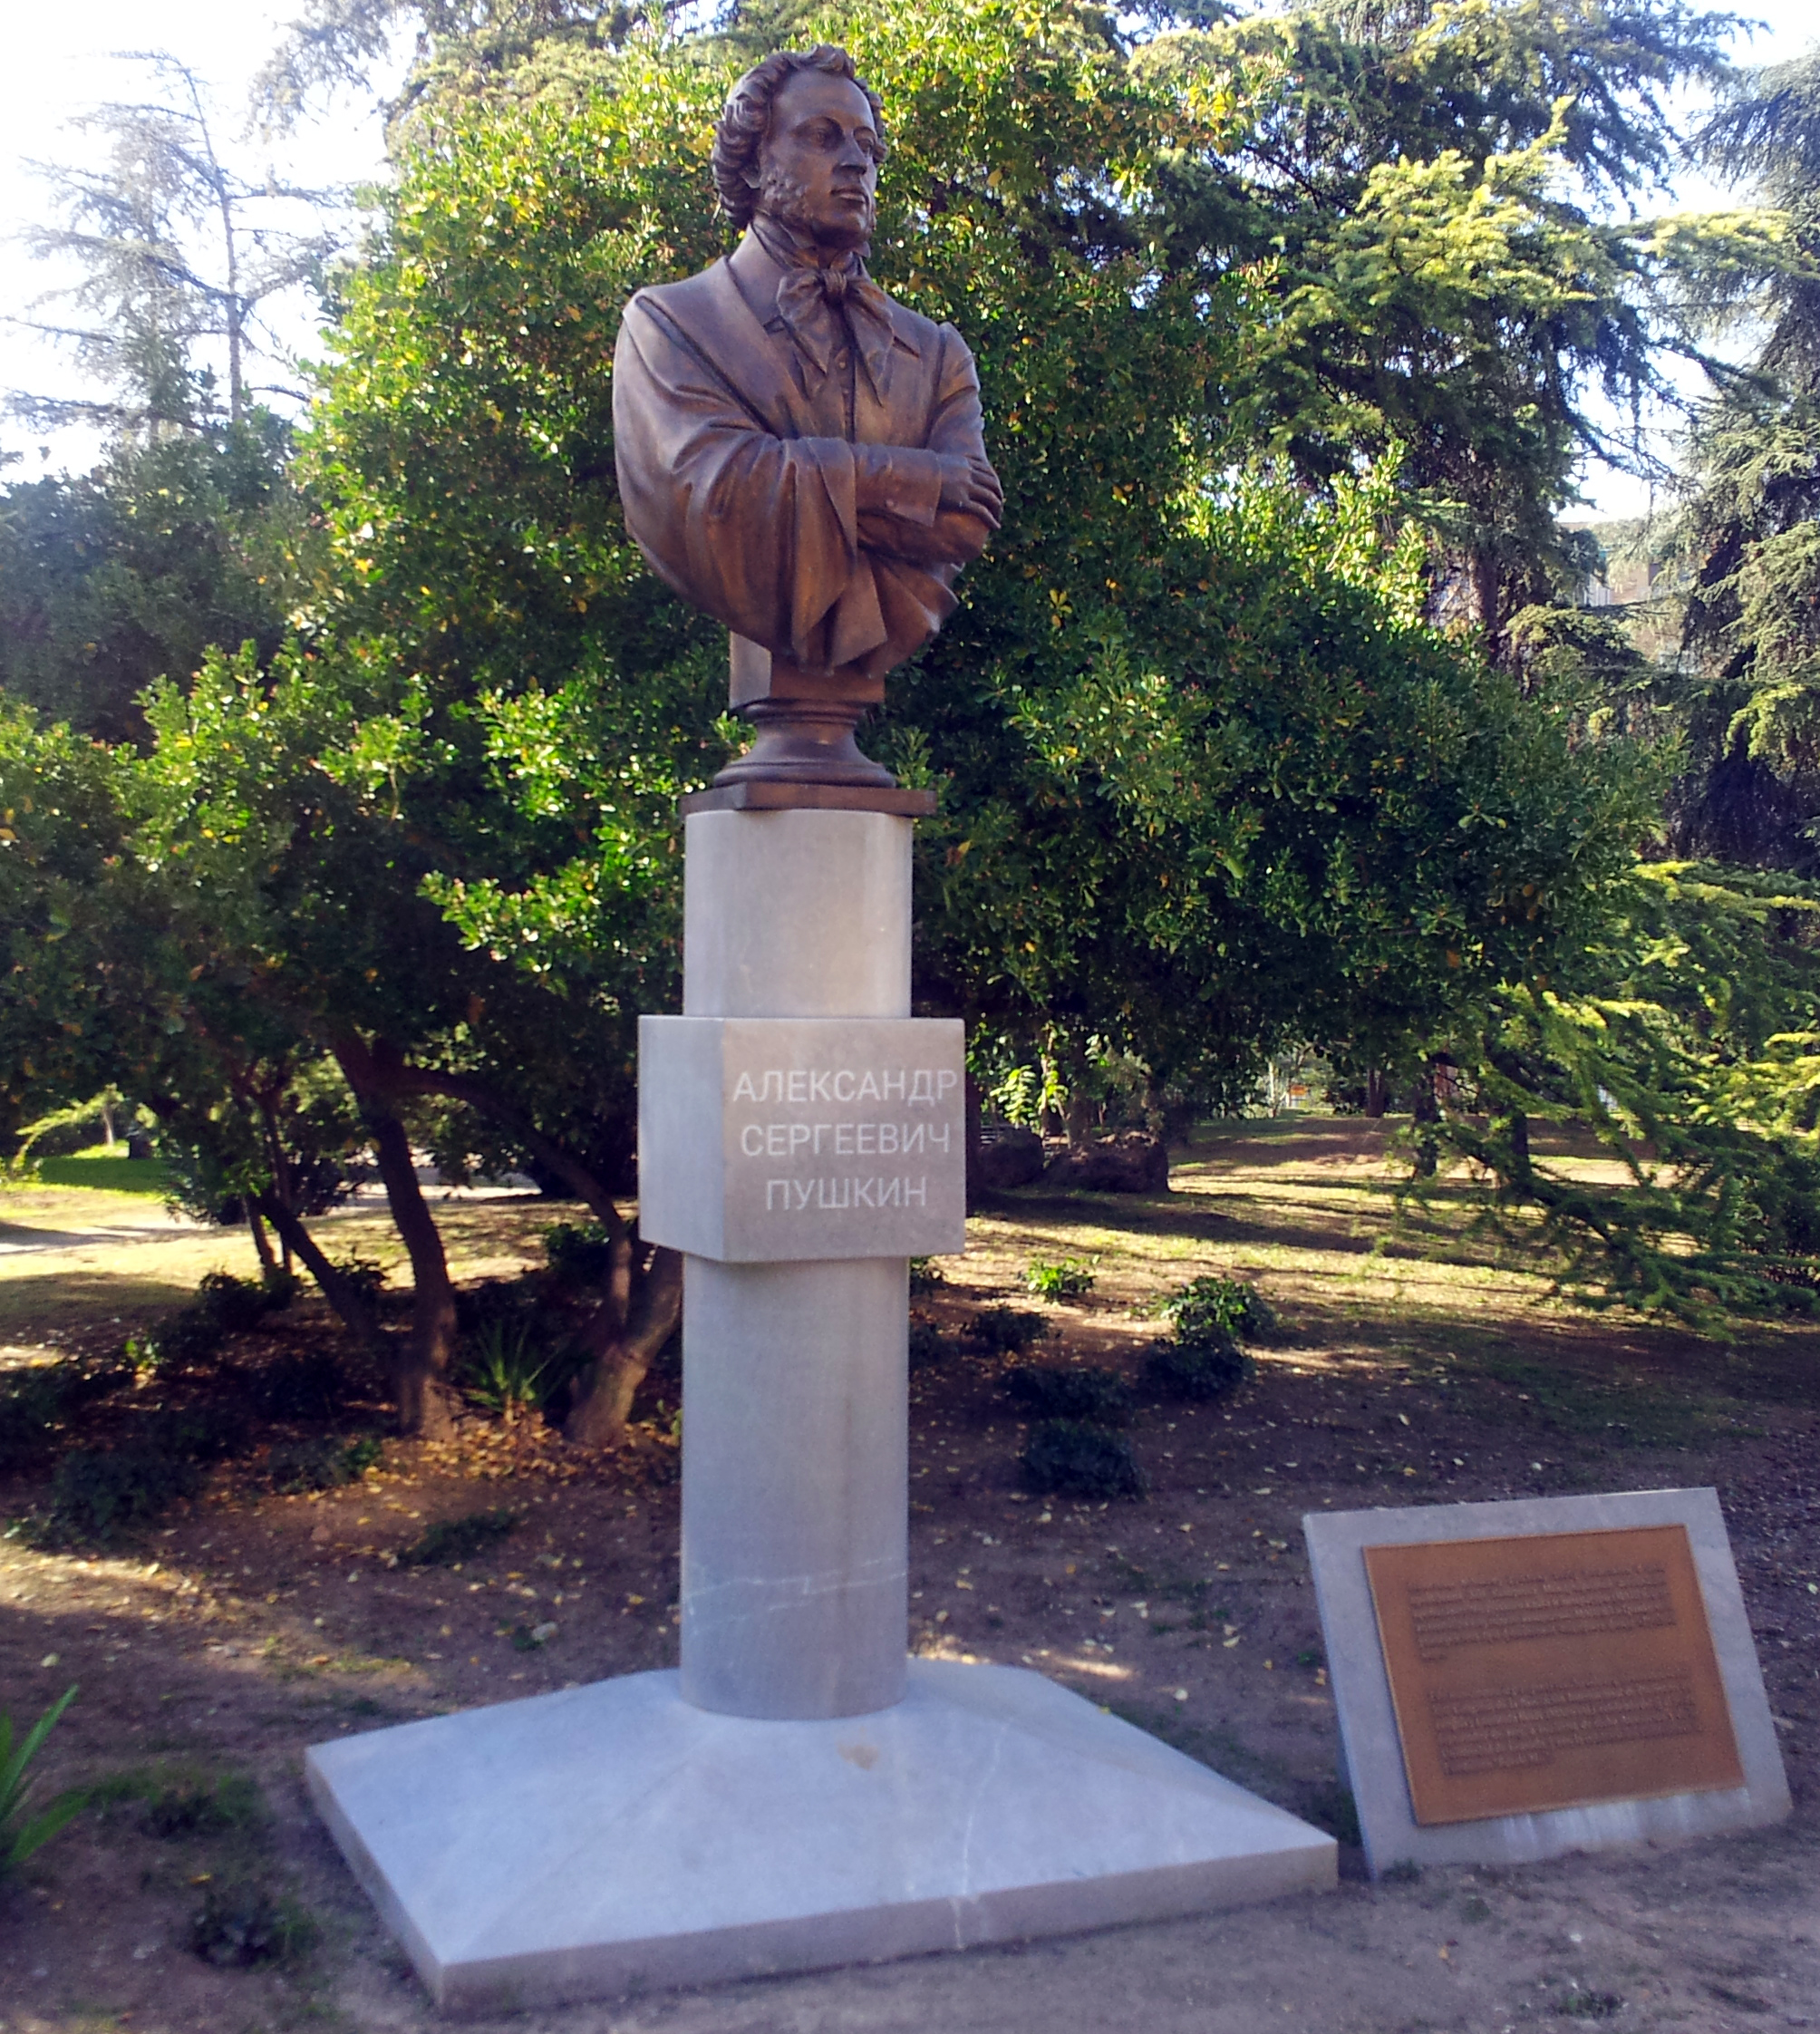 Busto erigido por la UGR al poeta ruso Aleksandr Pushkin en el Parque de Fuentenueva